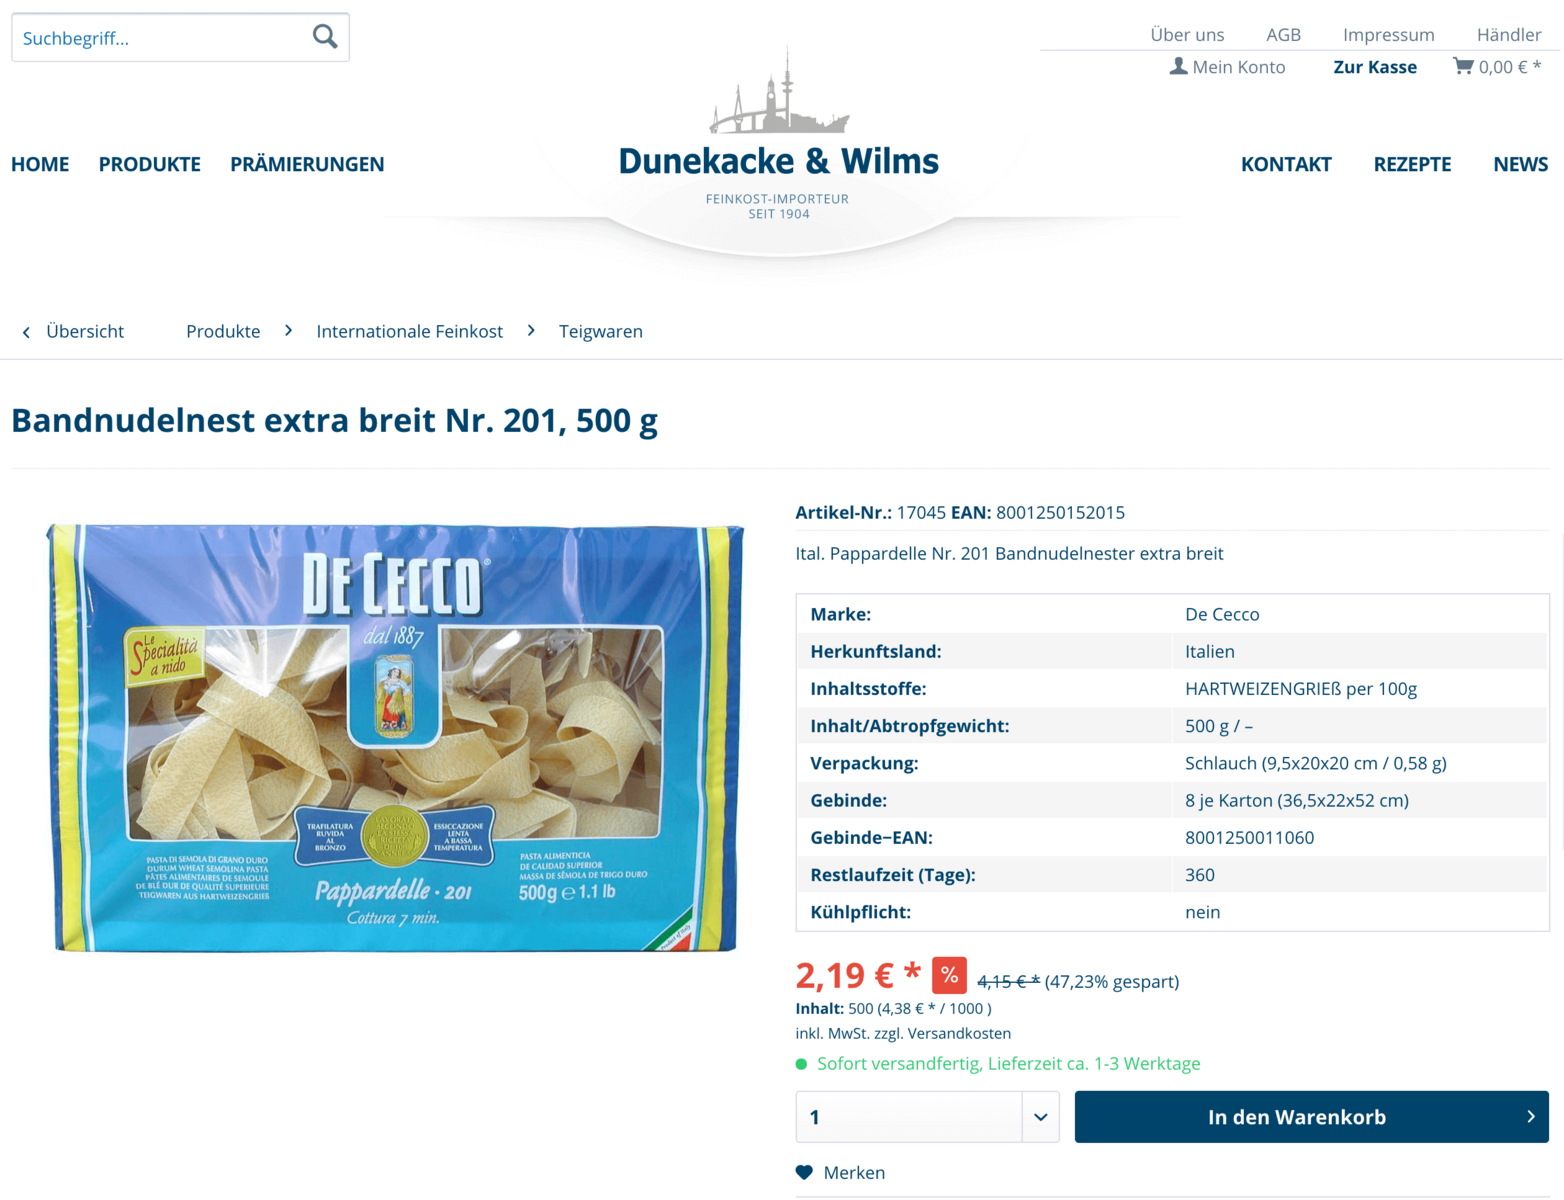 All In Online: Express-Webshop für Dunekacke & Wilms, Feinkost Hamburg 